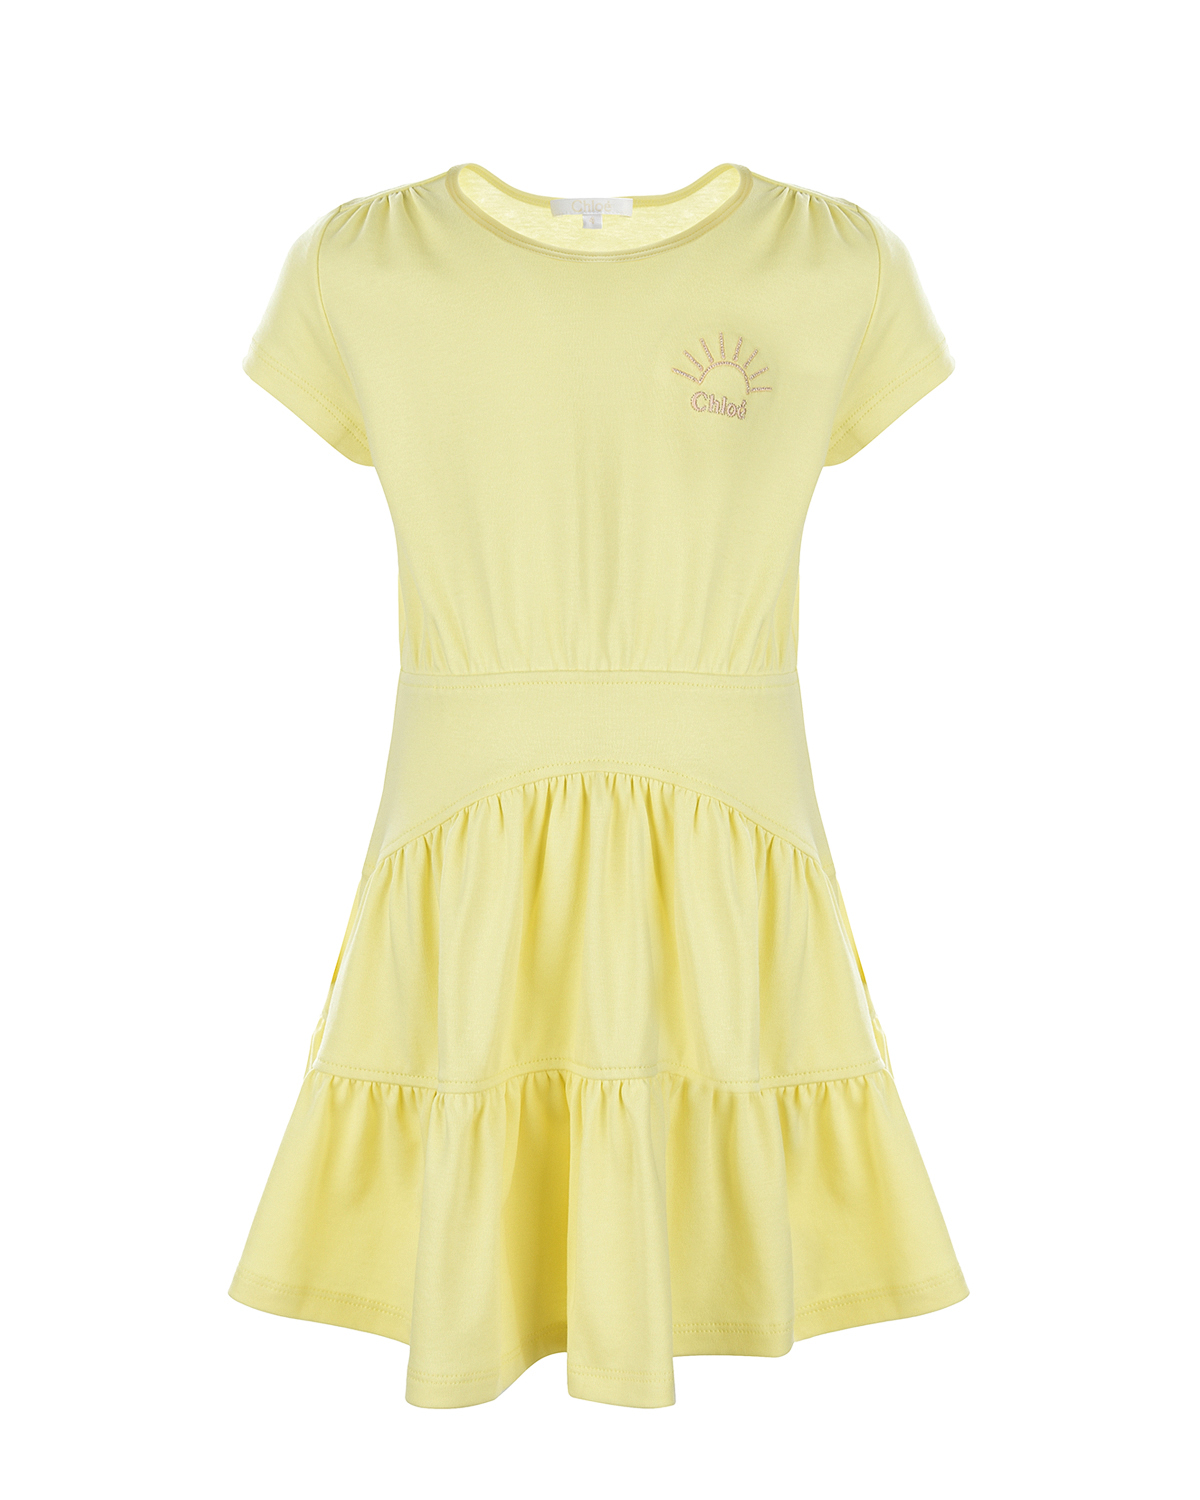 Желтое платье с оборками Chloe детское, размер 104, цвет желтый - фото 1